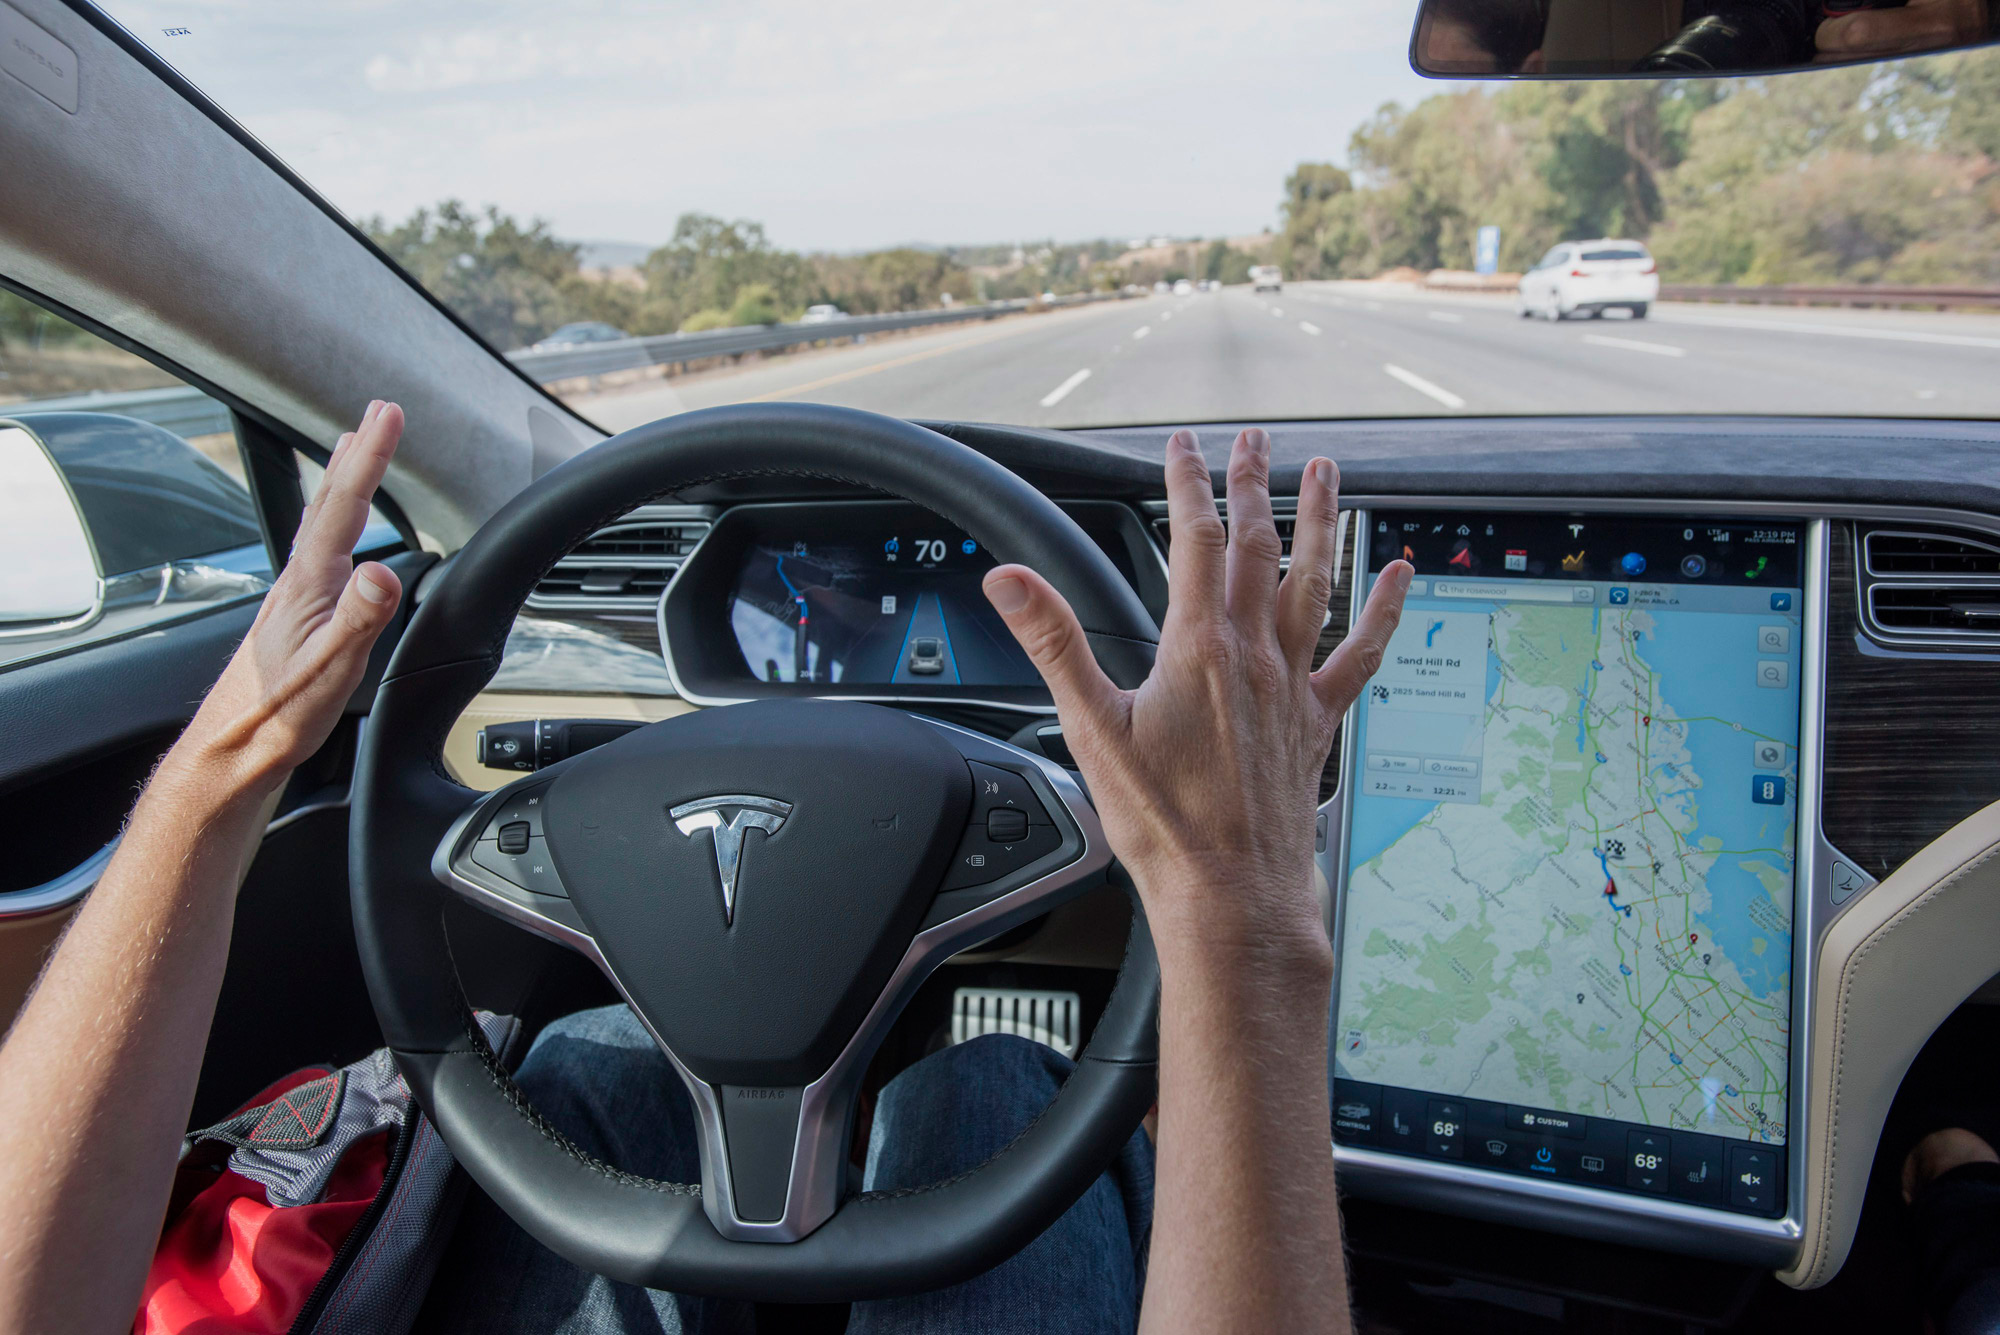 Tesla Model S autopilot hands-free